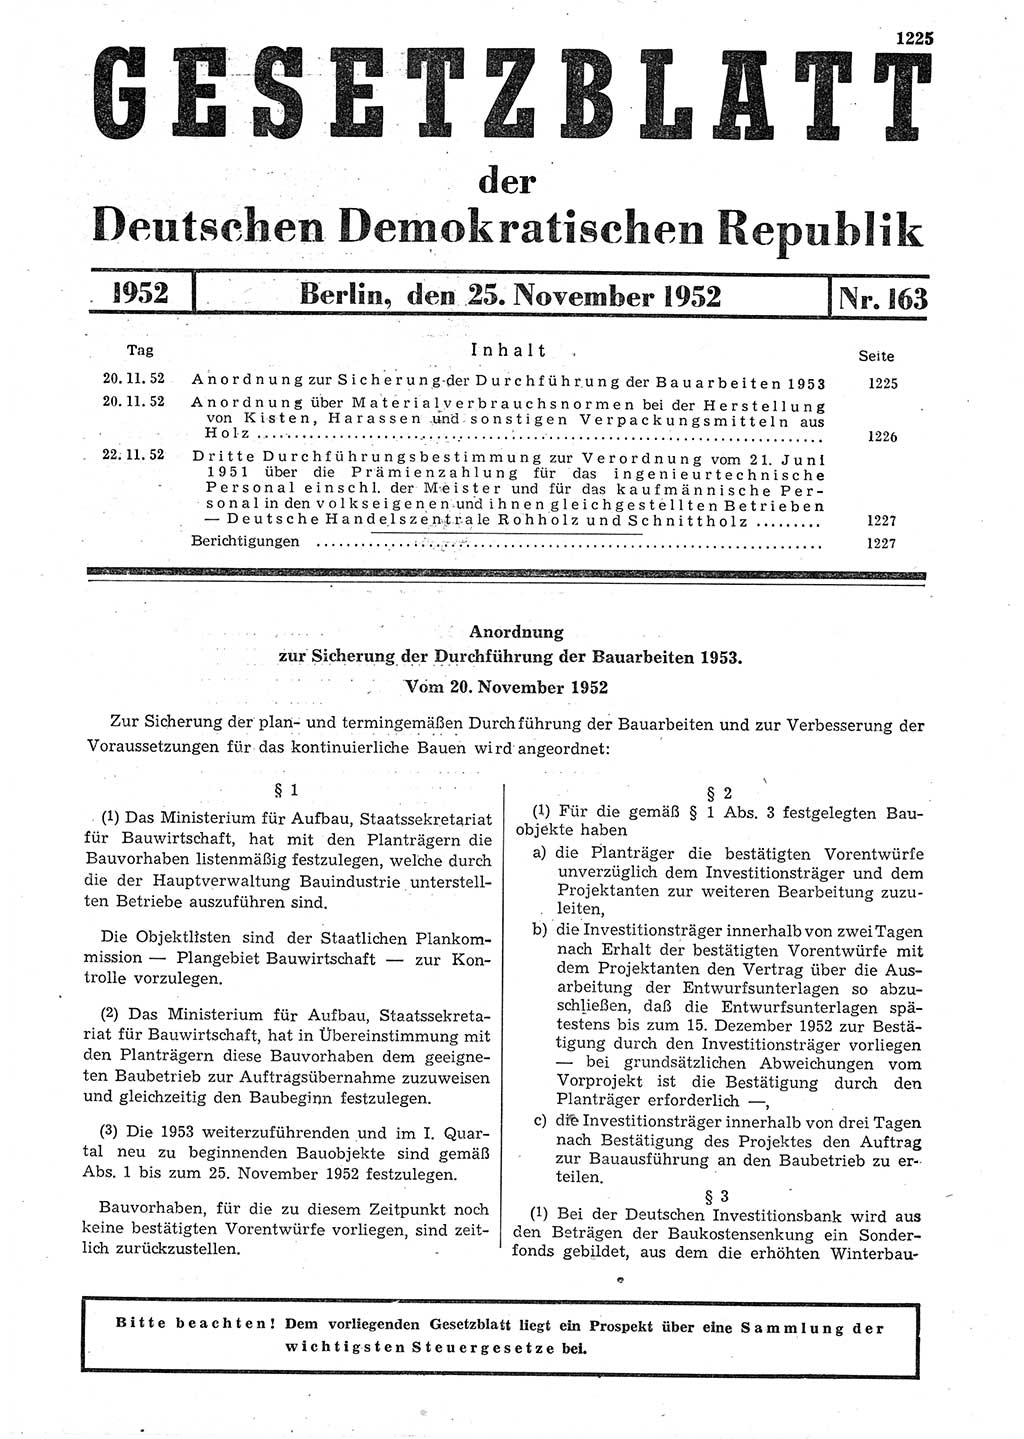 Gesetzblatt (GBl.) der Deutschen Demokratischen Republik (DDR) 1952, Seite 1225 (GBl. DDR 1952, S. 1225)